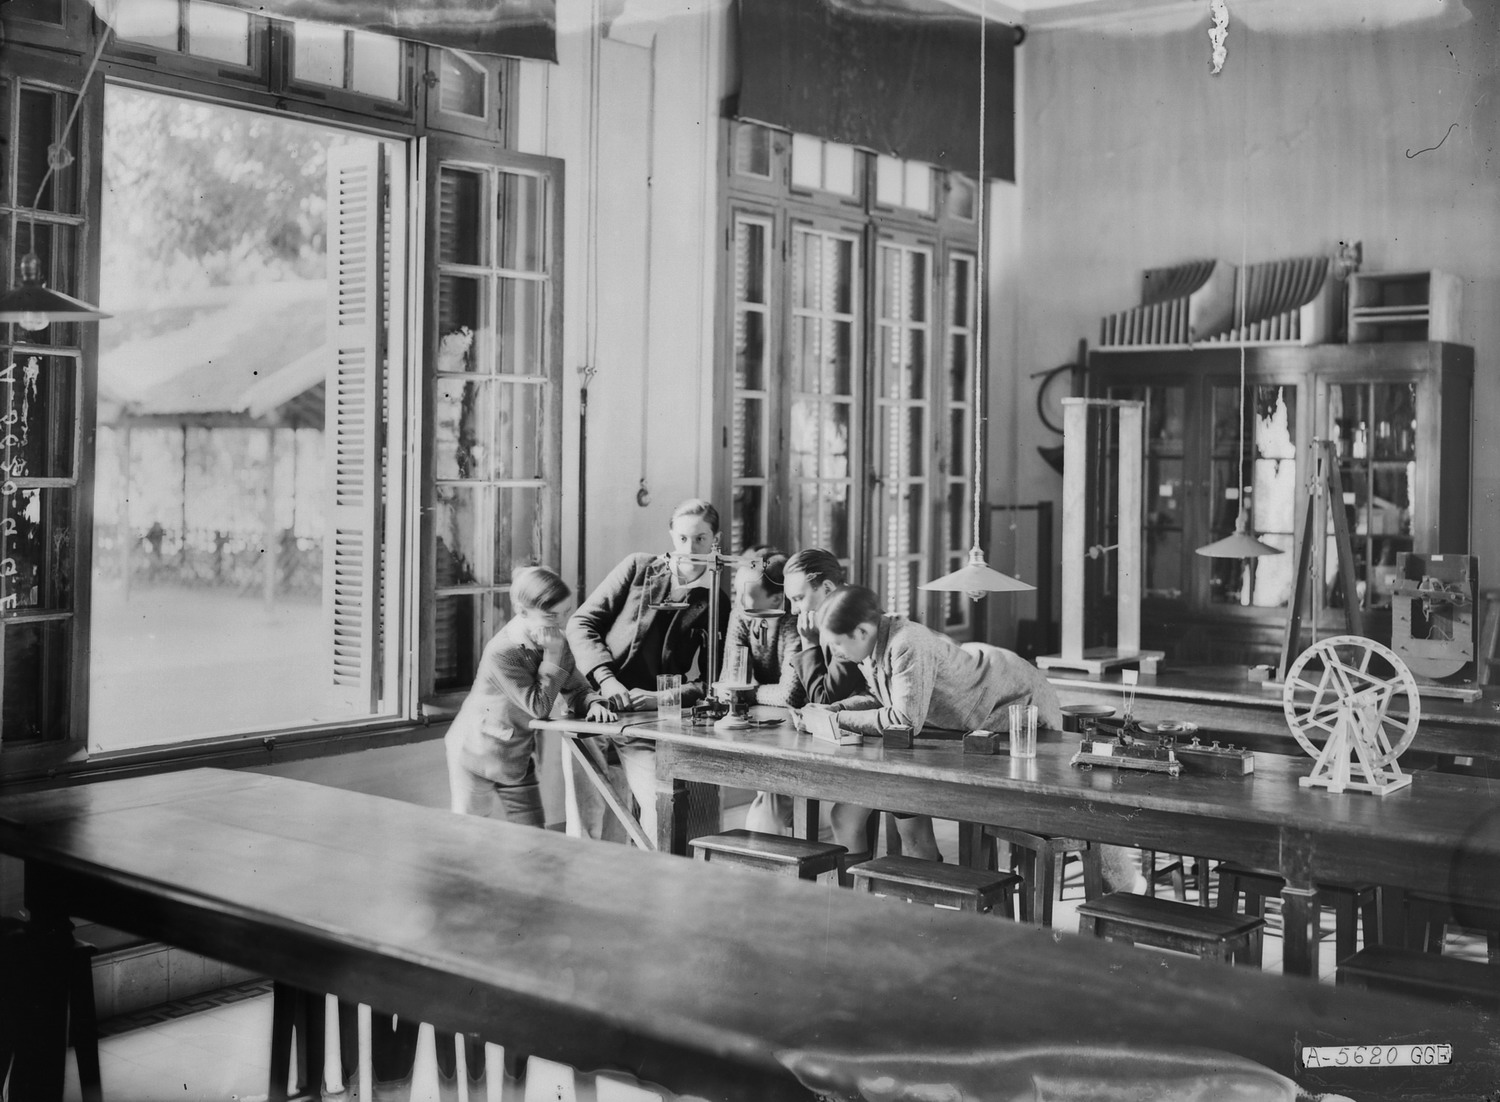 Nội cảnh ở Trường Trung học Albert Sarraut ở Hà Nội đầu thế kỷ 20